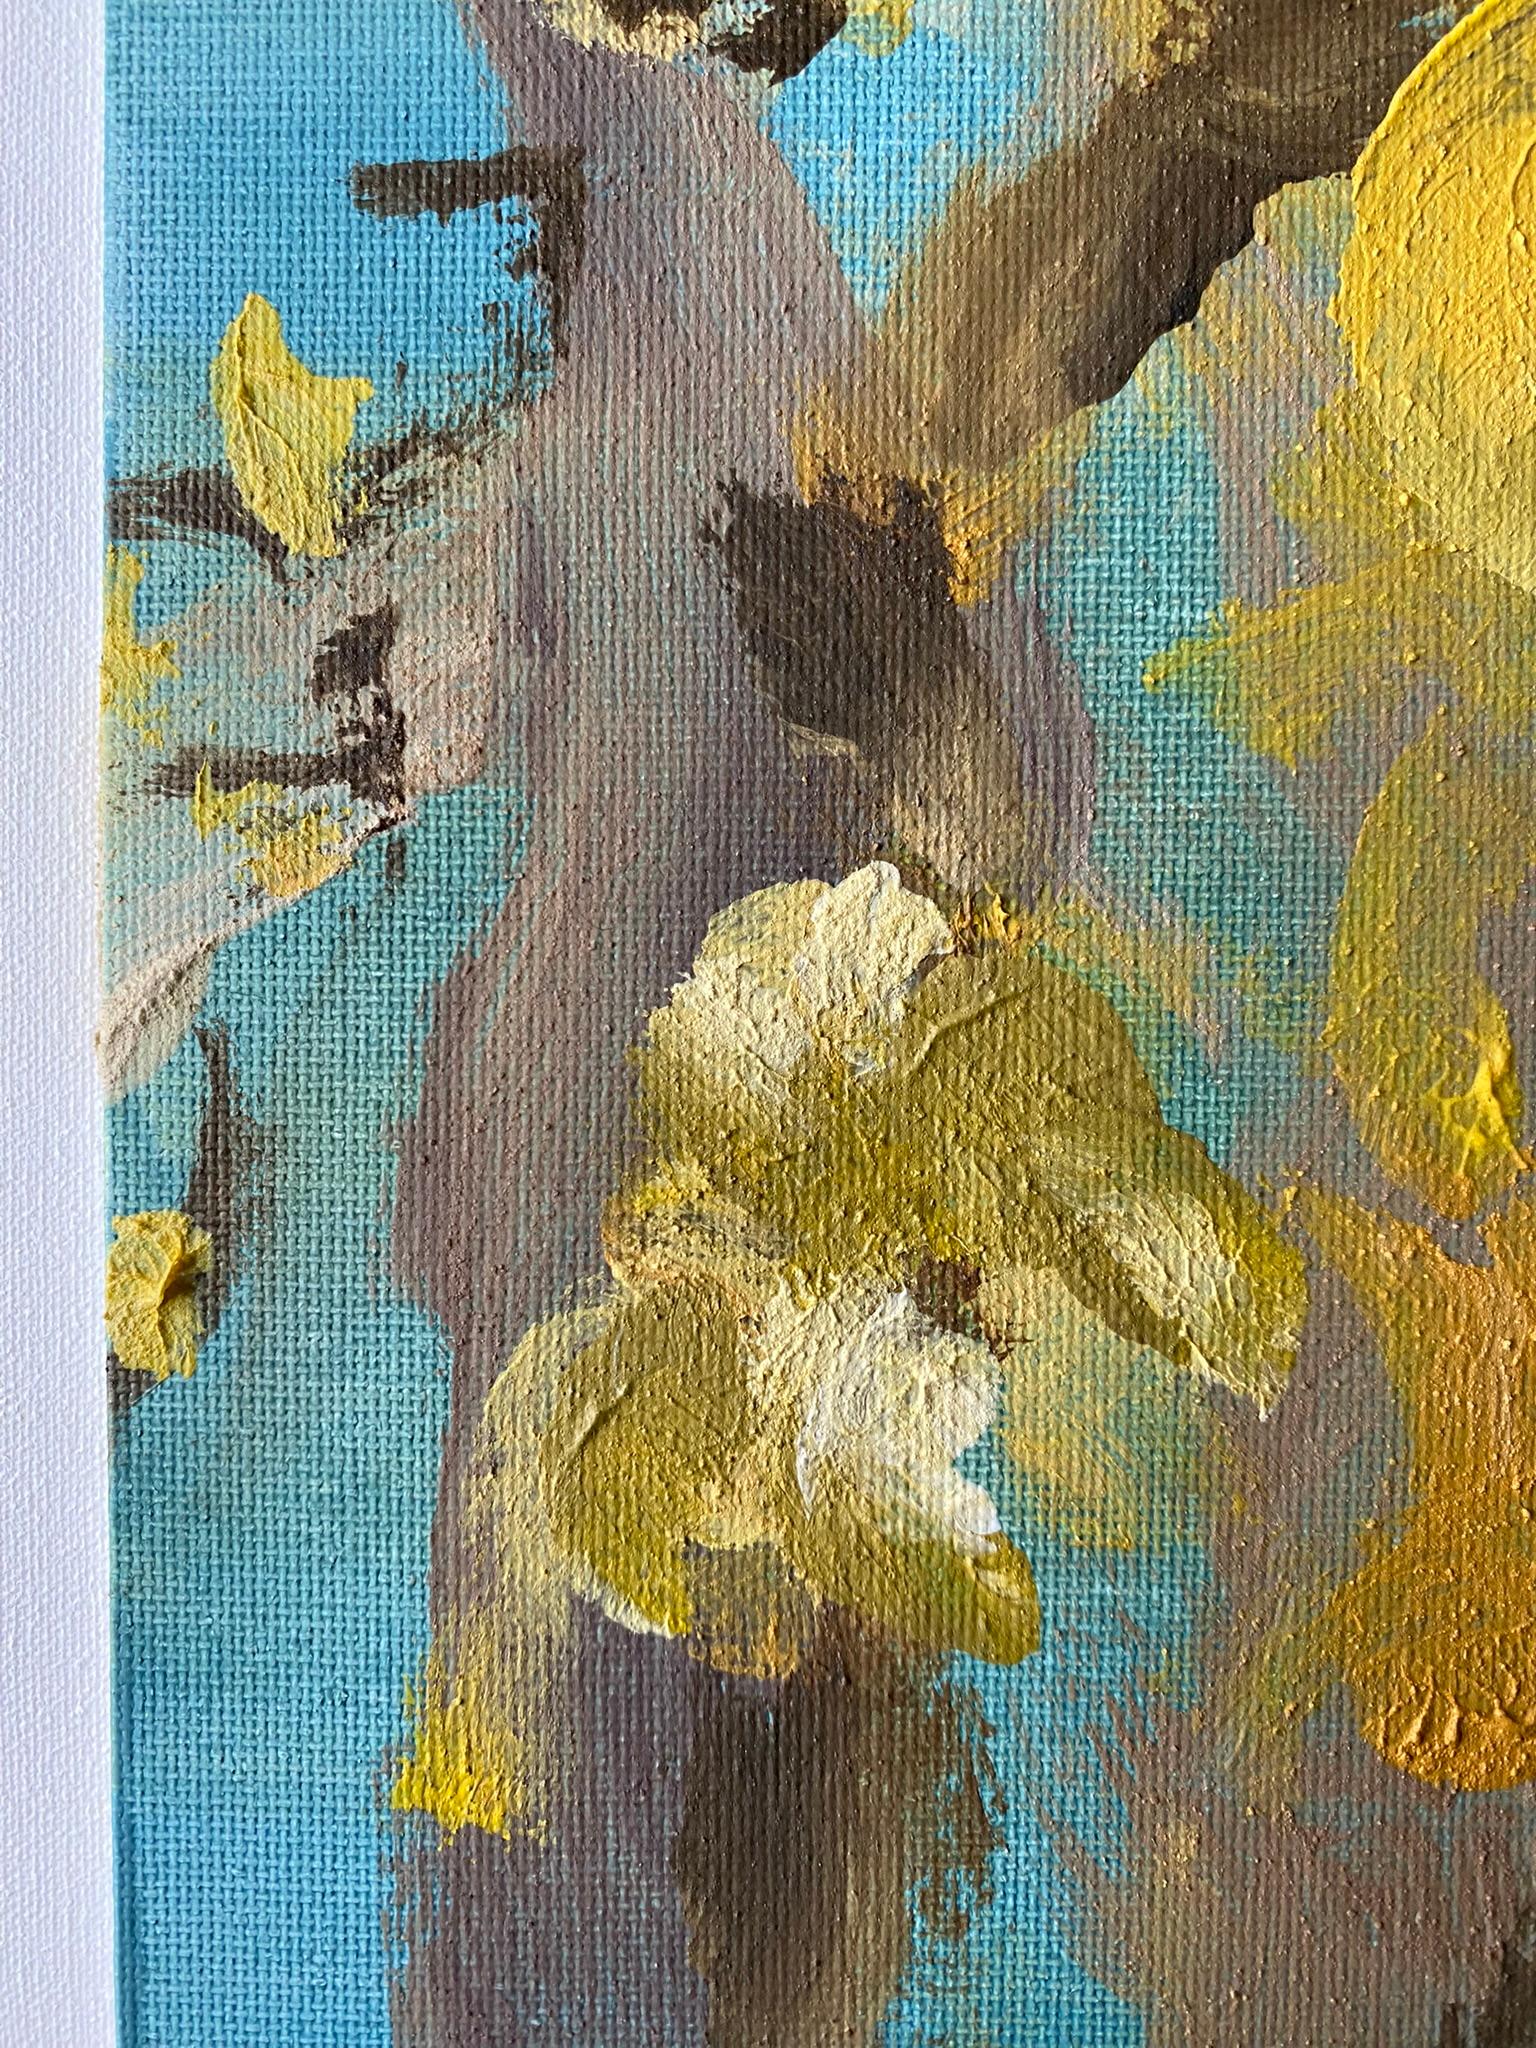 Original-Magnolias-Memory Landscape-UK Awarded Artist-oil on canvas board-Spring For Sale 14